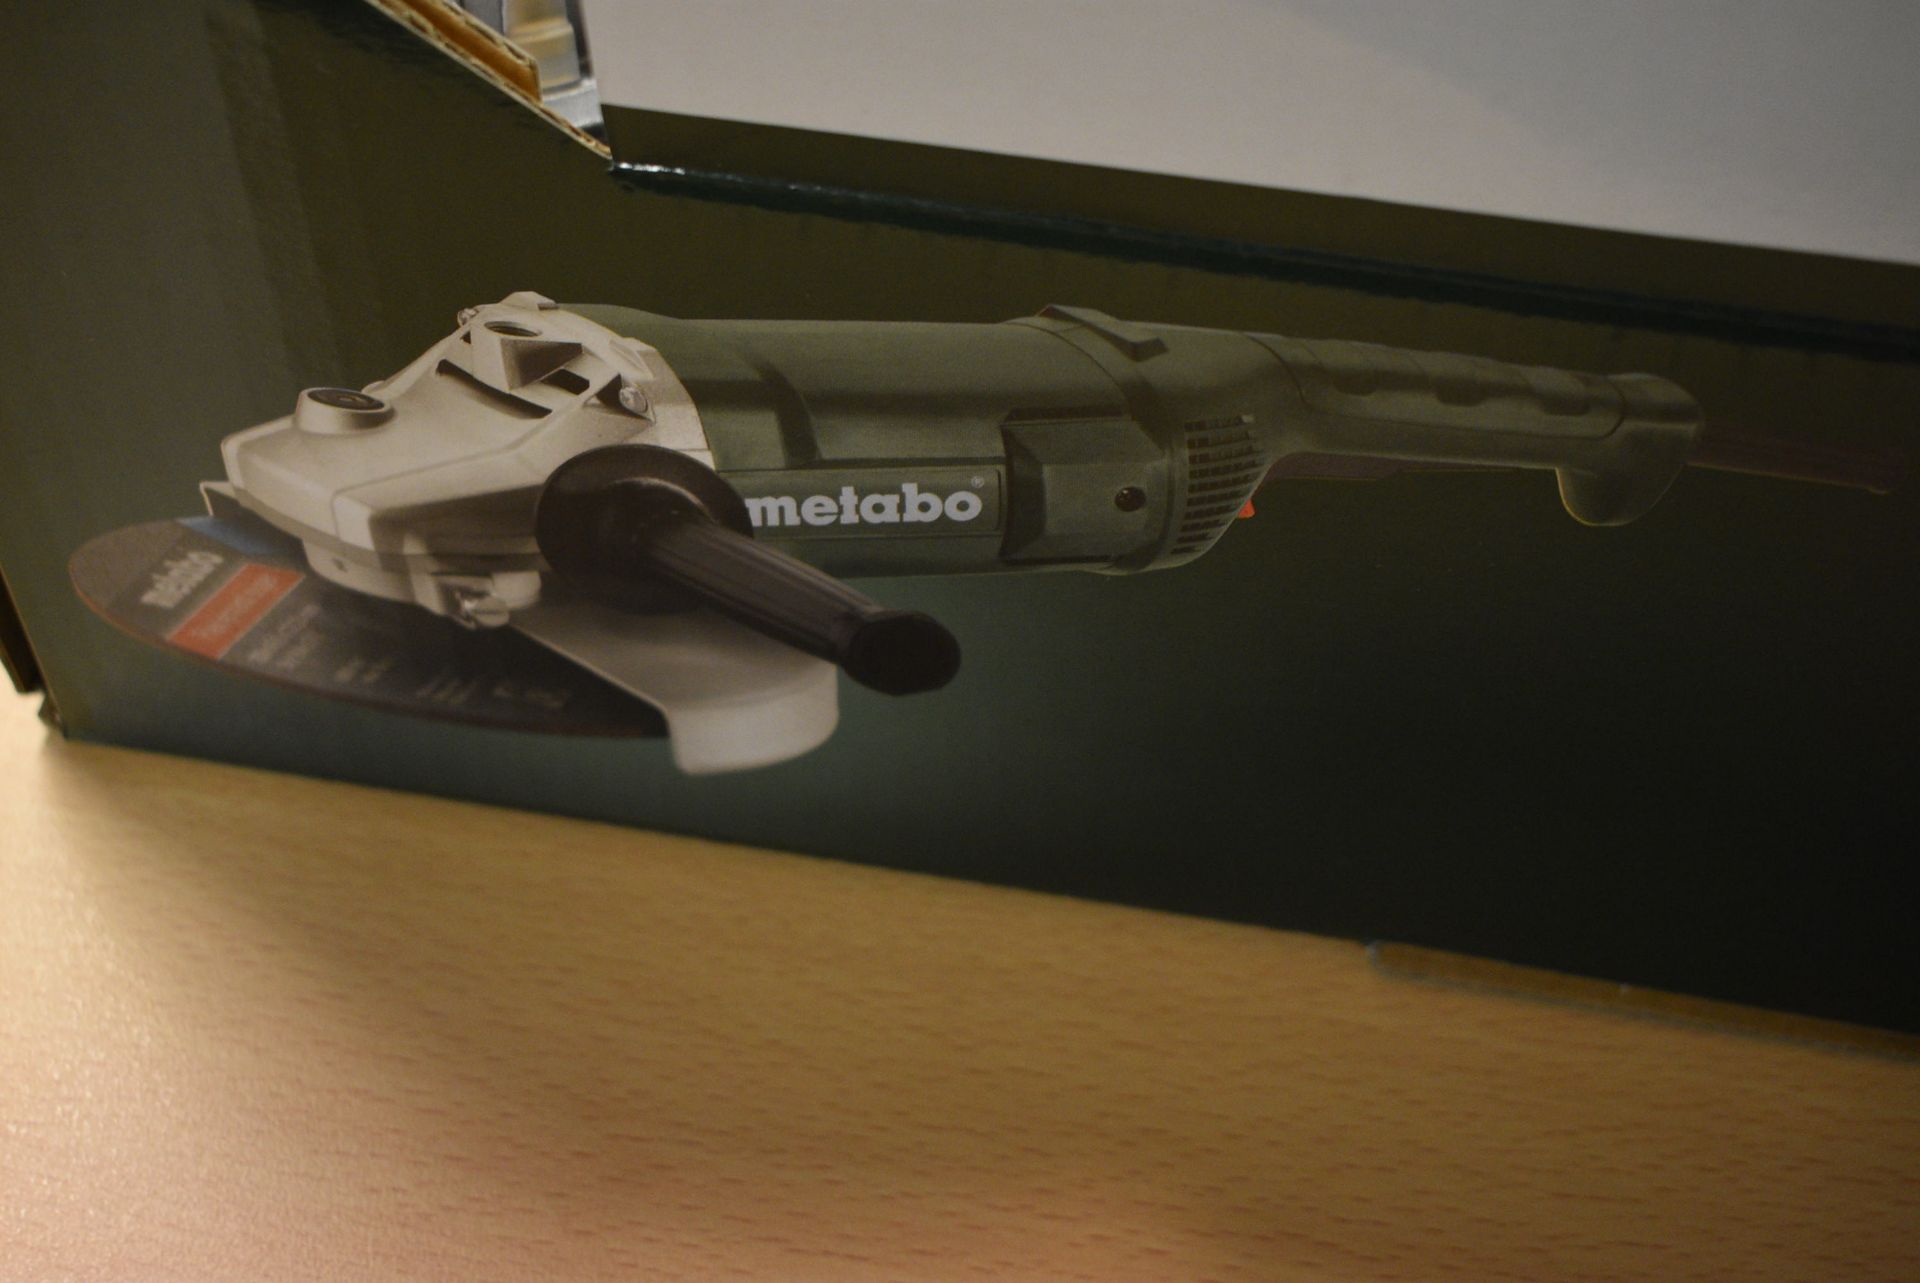 Metabo 12mm Angle Grinder, 110V (no plug – underst - Image 2 of 3